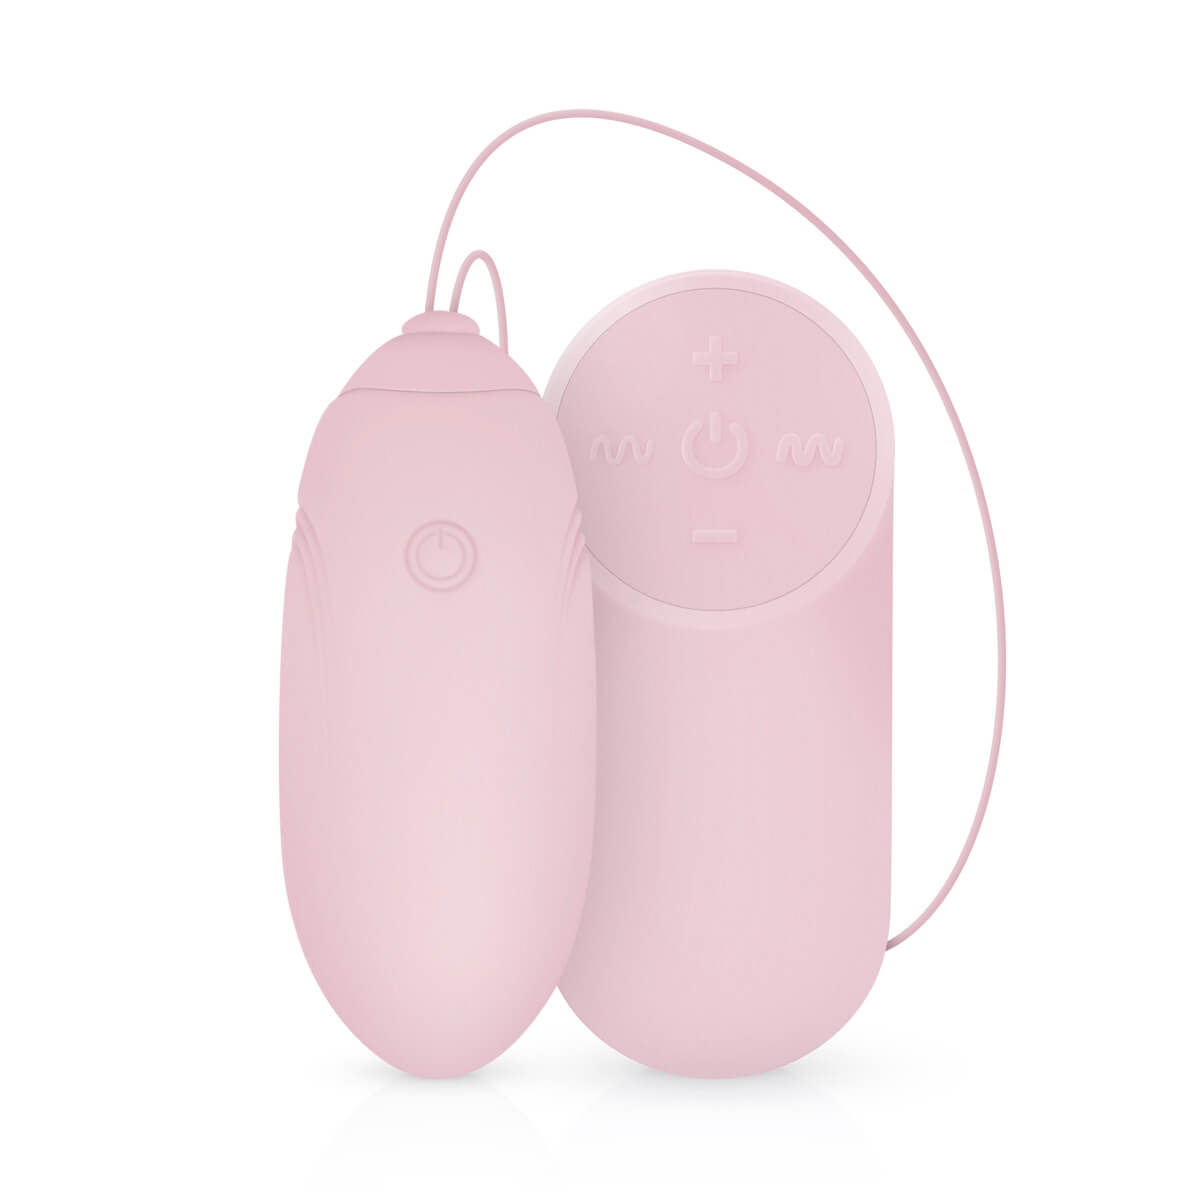 LUV EGG - akkus, rádiós vibrációs tojás (pink) Kéjgolyók, tojás vibrátorok kép